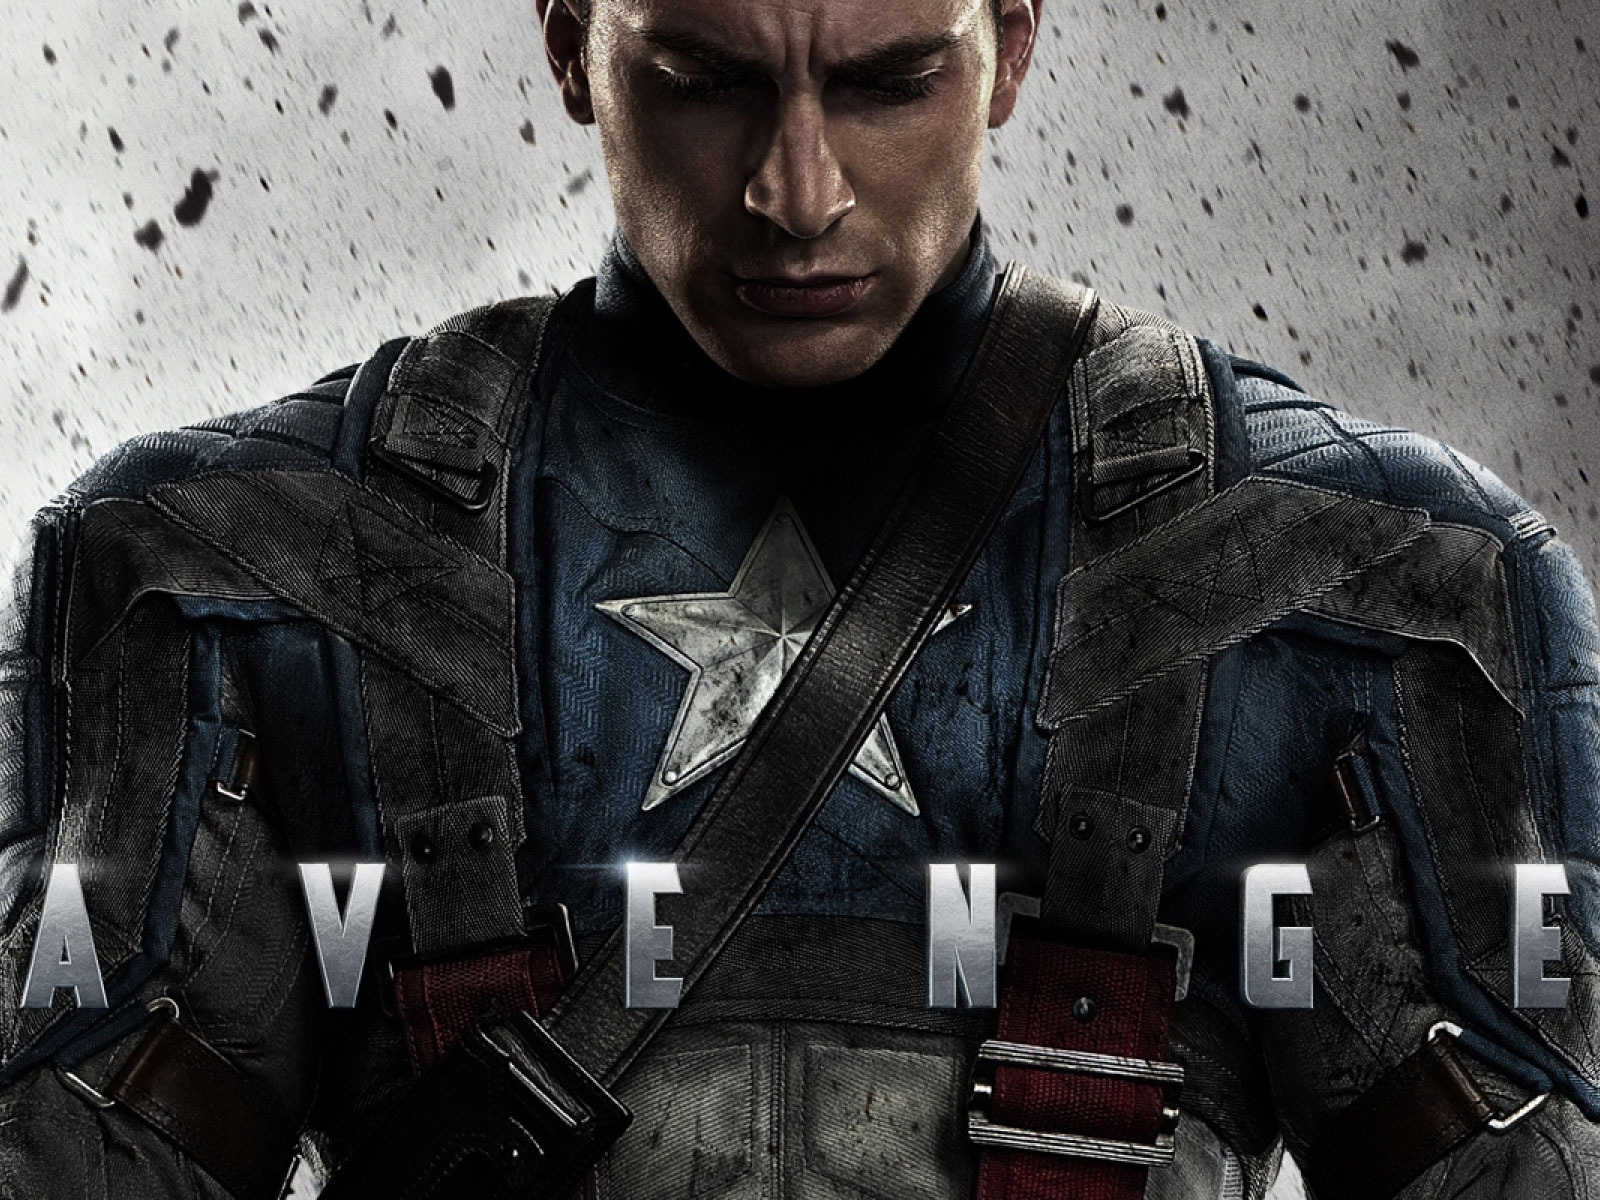 Avenger Captain America for 1600 x 1200 resolution